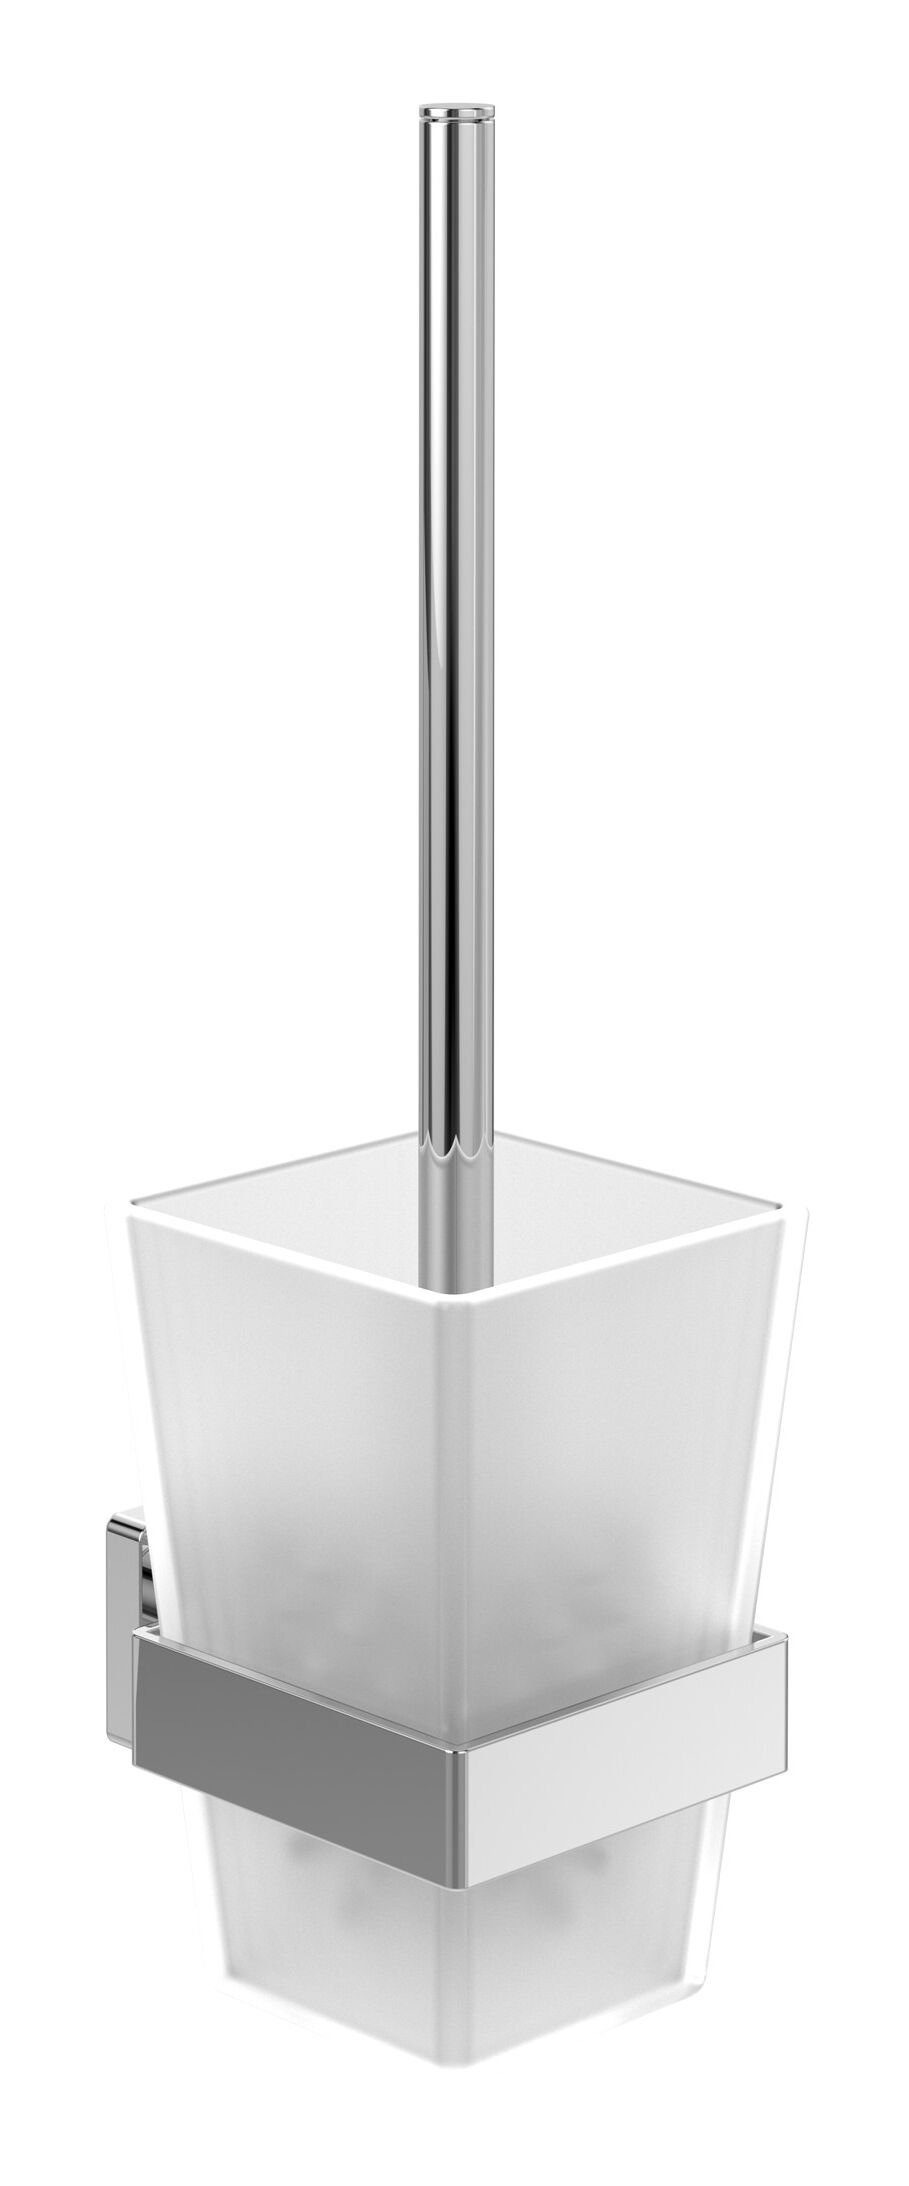 Villeroy & Boch WC-Garnitur Elements - Striking, Toilettenbürstengarnitur 94 x 118 mm - Chrom